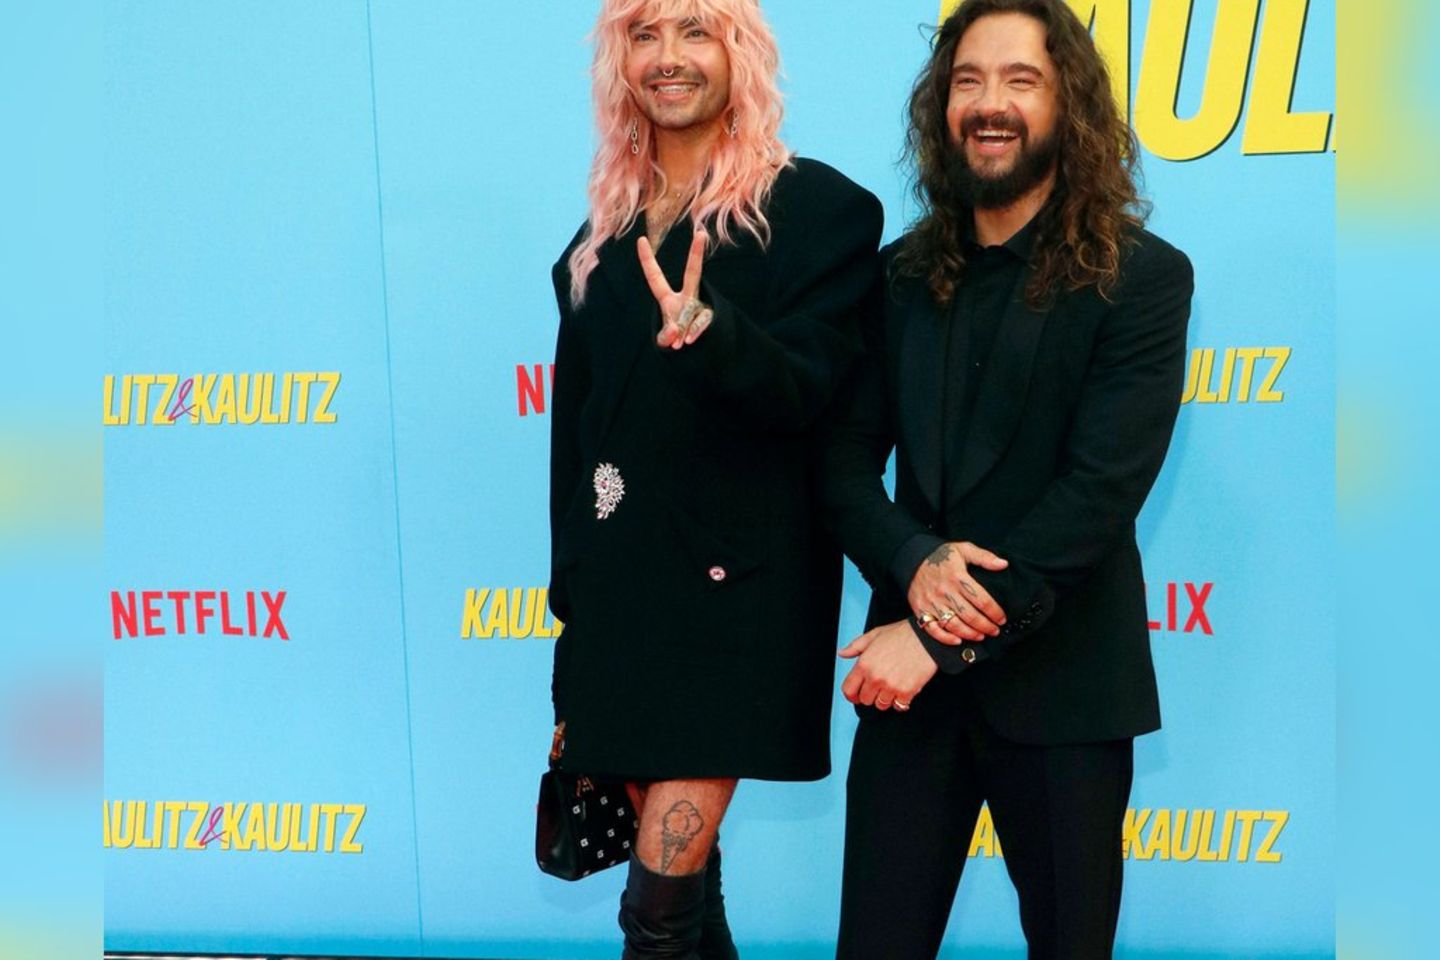 Tom (r.) und Bill Kaulitz bei der Premiere ihrer kommenden Netflix-Doku.